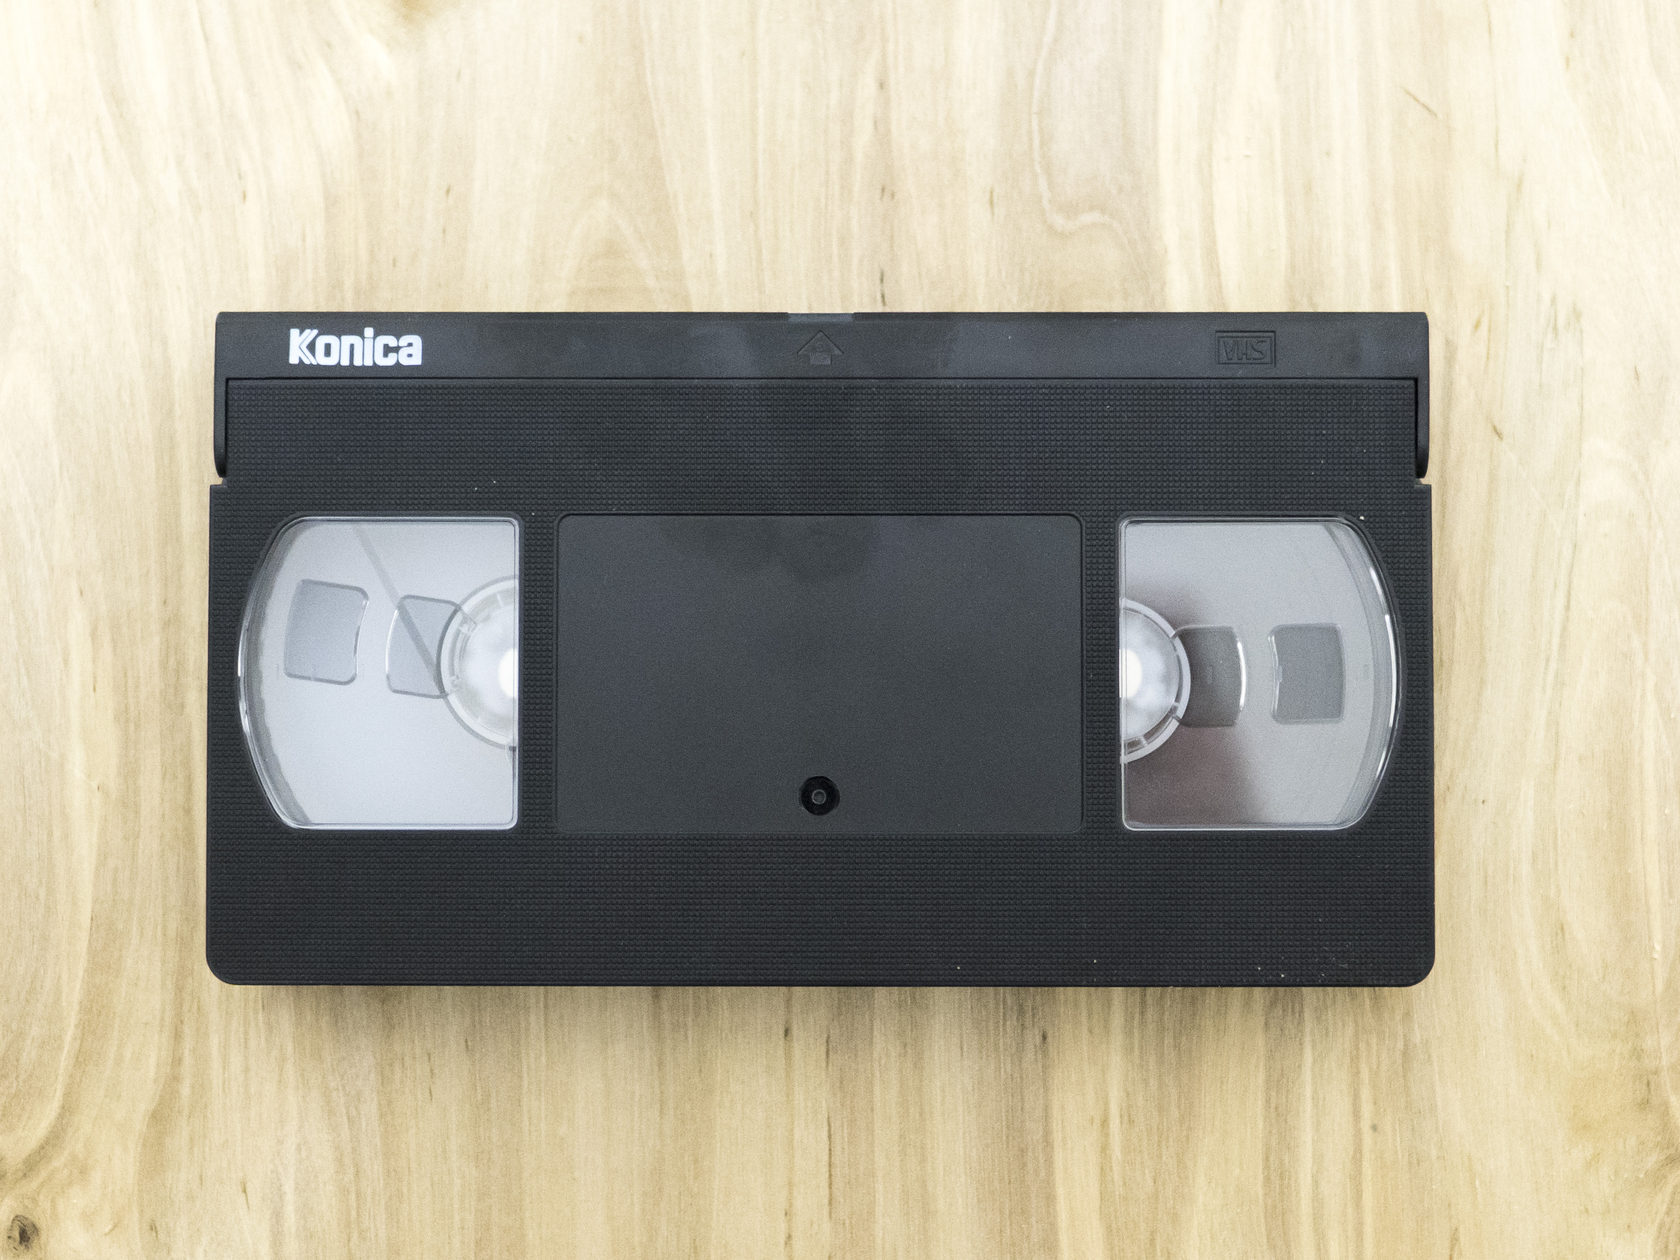 Дом кассета. Пустая кассета. Студия по оцифровке видеокассет. Кейс для хранения видеокассет hi8.